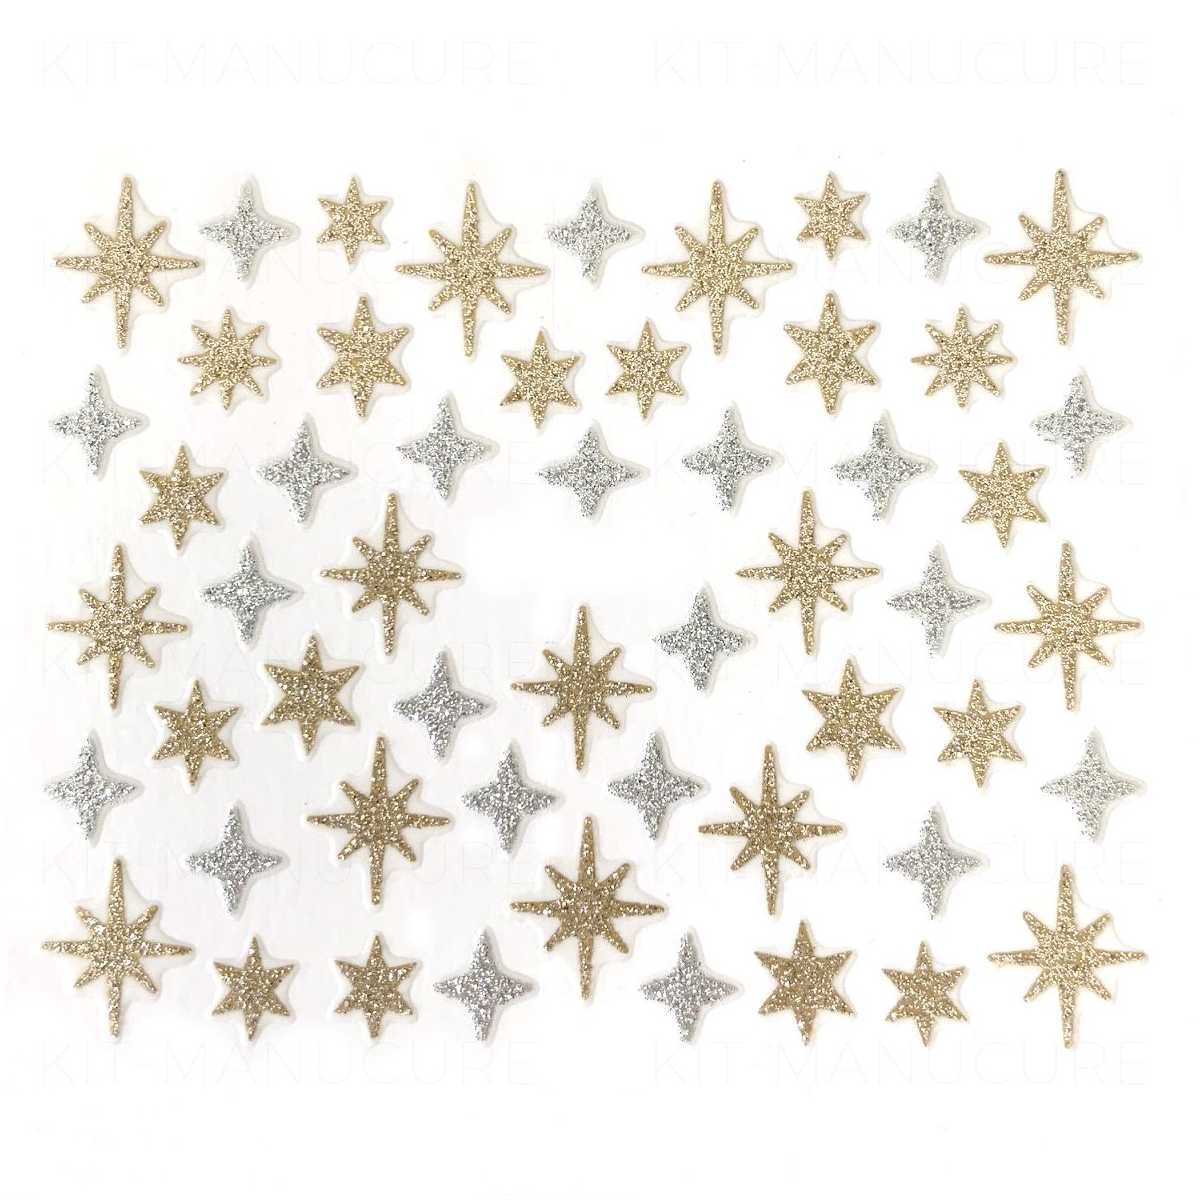 500 autocollants en forme d'étoile dorée, autocollants en feuille  métallique pailletée autocollants en forme d'étoile réfléchissante  autocollants pour récompenser les étiquettes de comportement : :  Cuisine et Maison